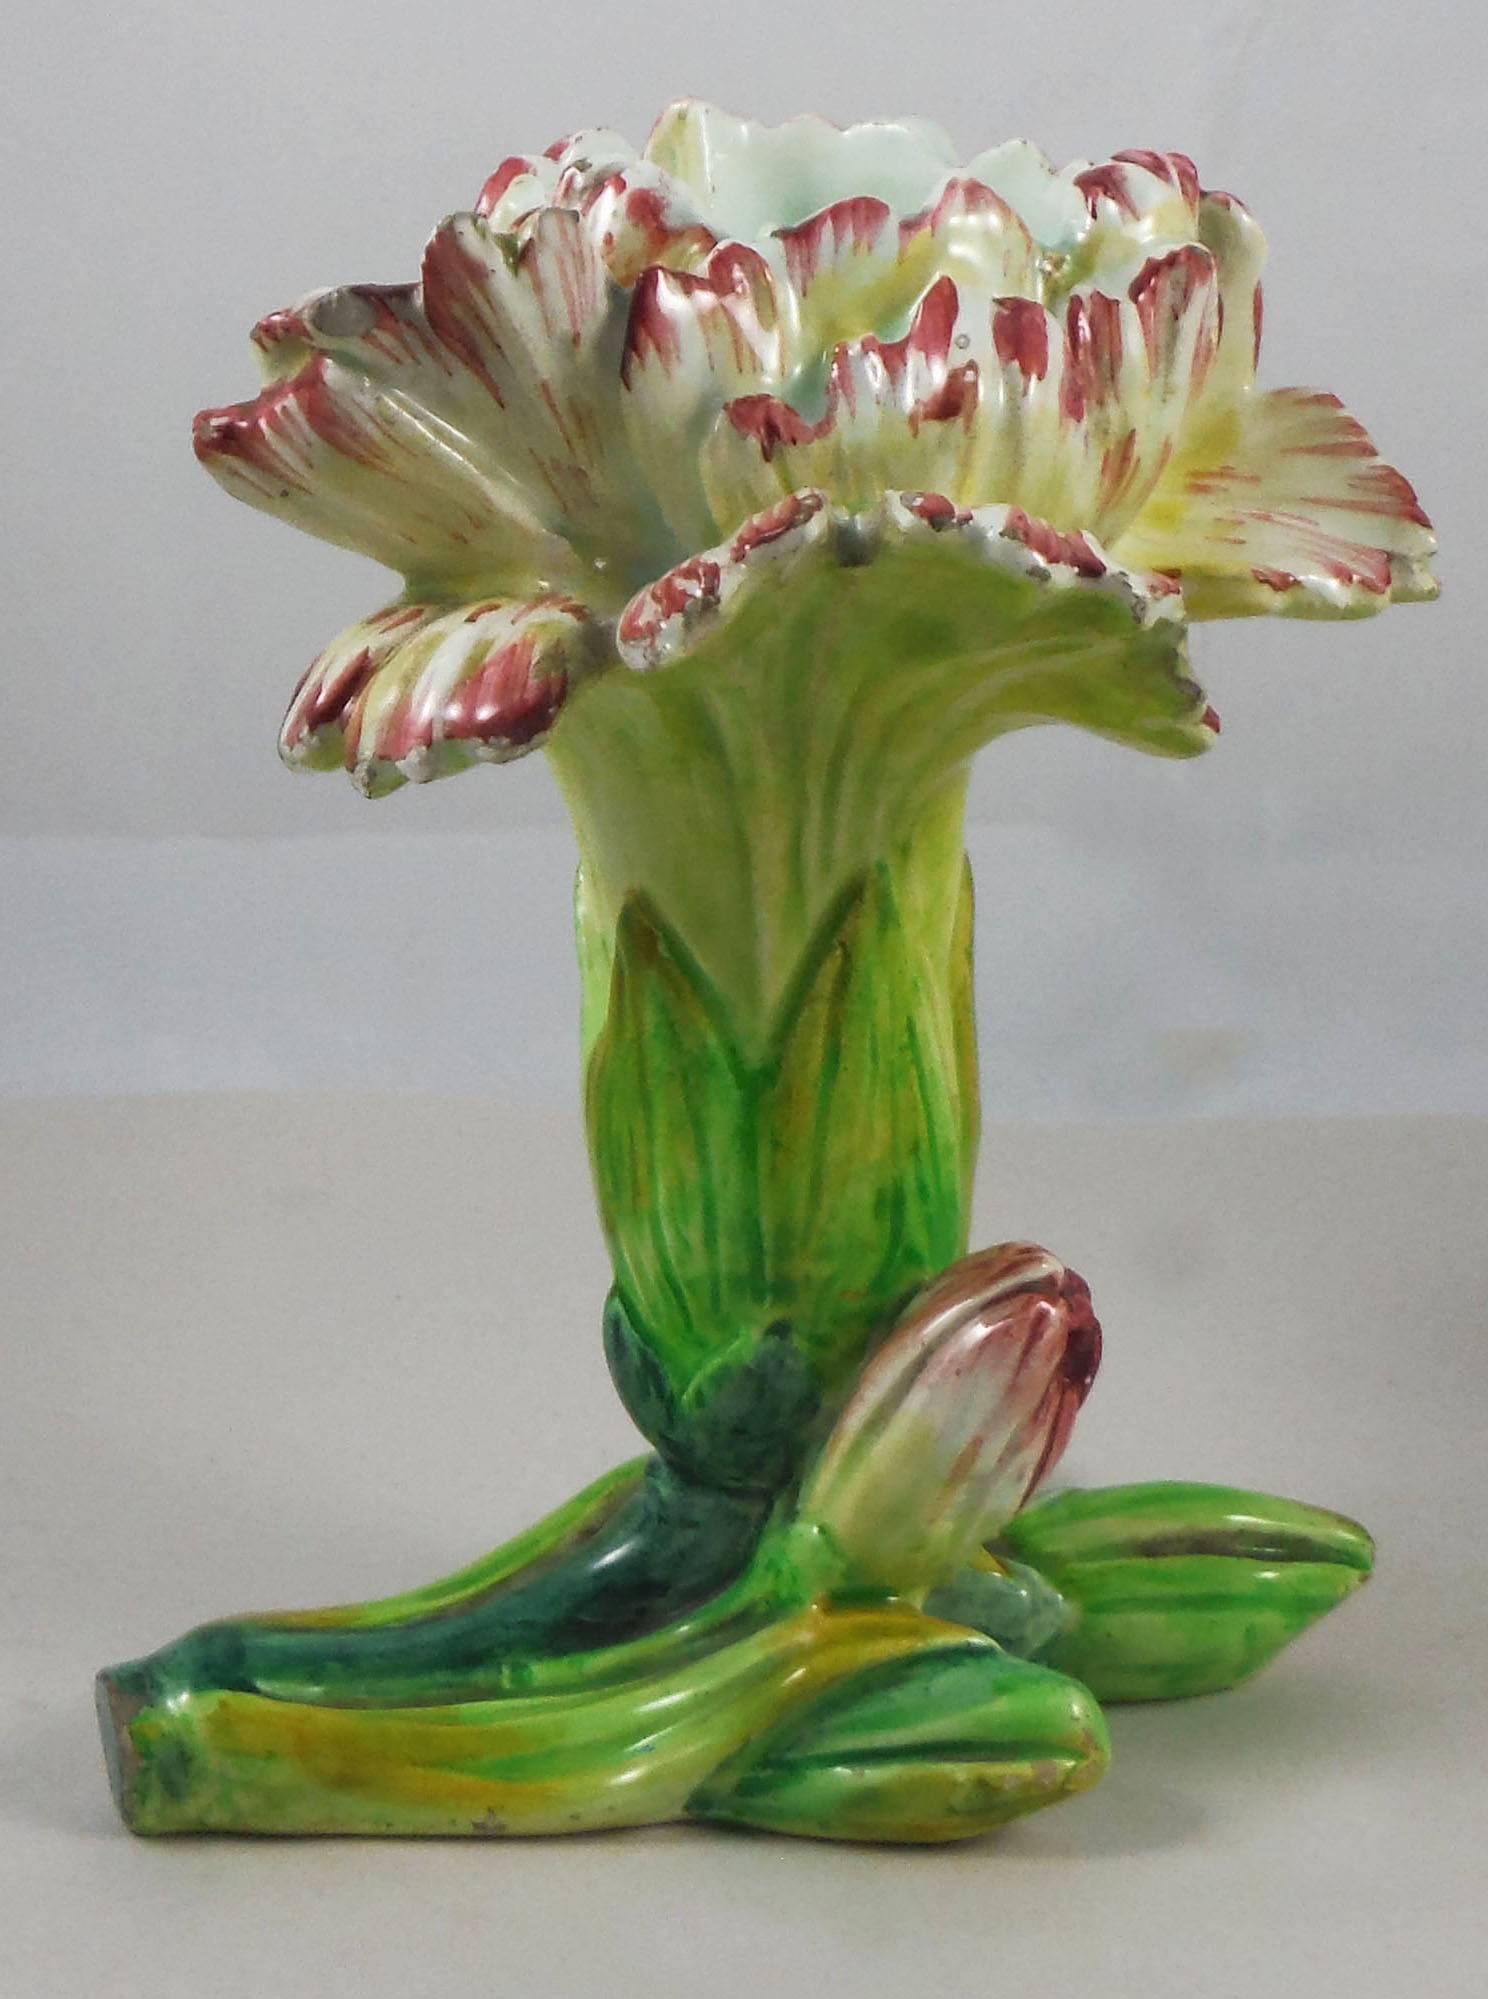 Rare vase à œillets en majolique signé Jérôme Massier, vers 1900.
La famille Massier est connue pour la qualité de ses émaux et peintures uniques. Ils ont produit toute une gamme incroyable de fleurs comme les iris, les roses, les marguerites, les